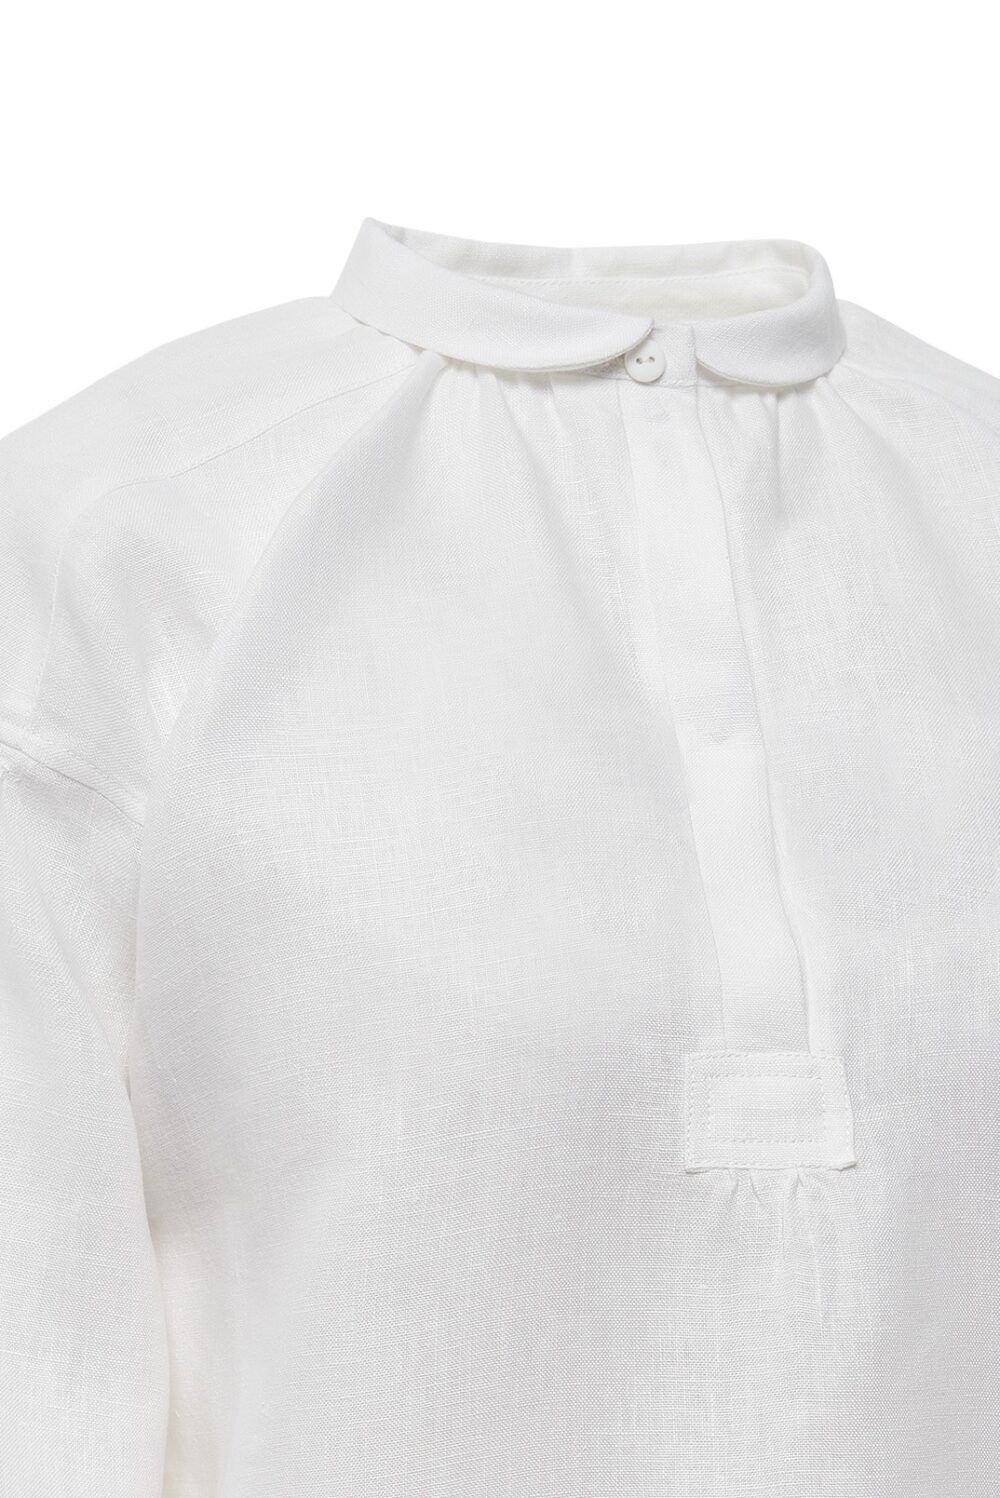 Aukštaitiški / Žemaitiški moteriški marškiniai Mrš61